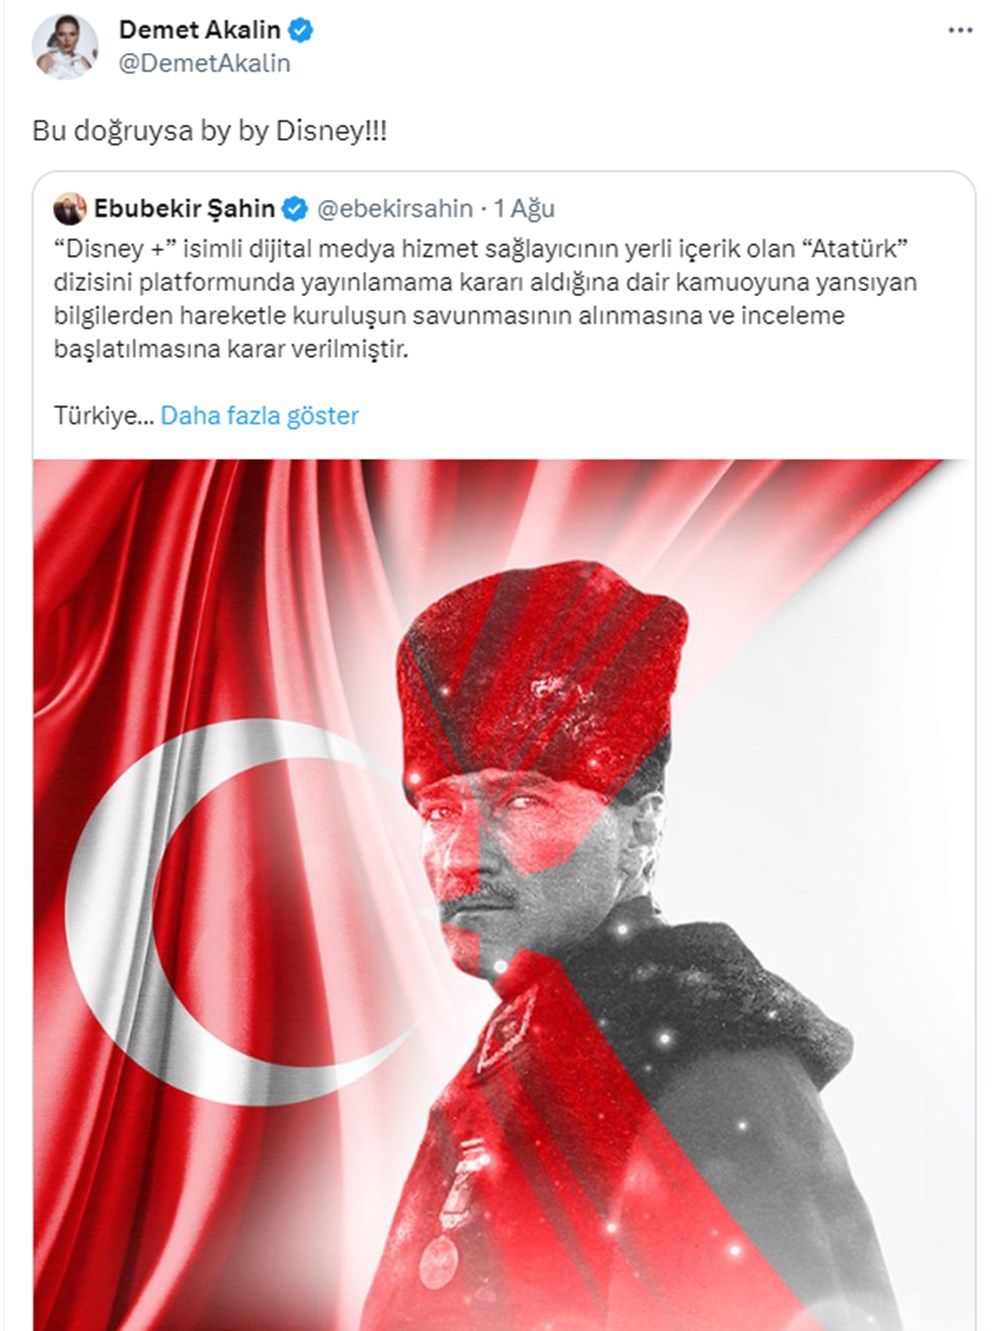 Disney'in Atatürk dizisi kararına ünlü isimlerden tepkiler - 6